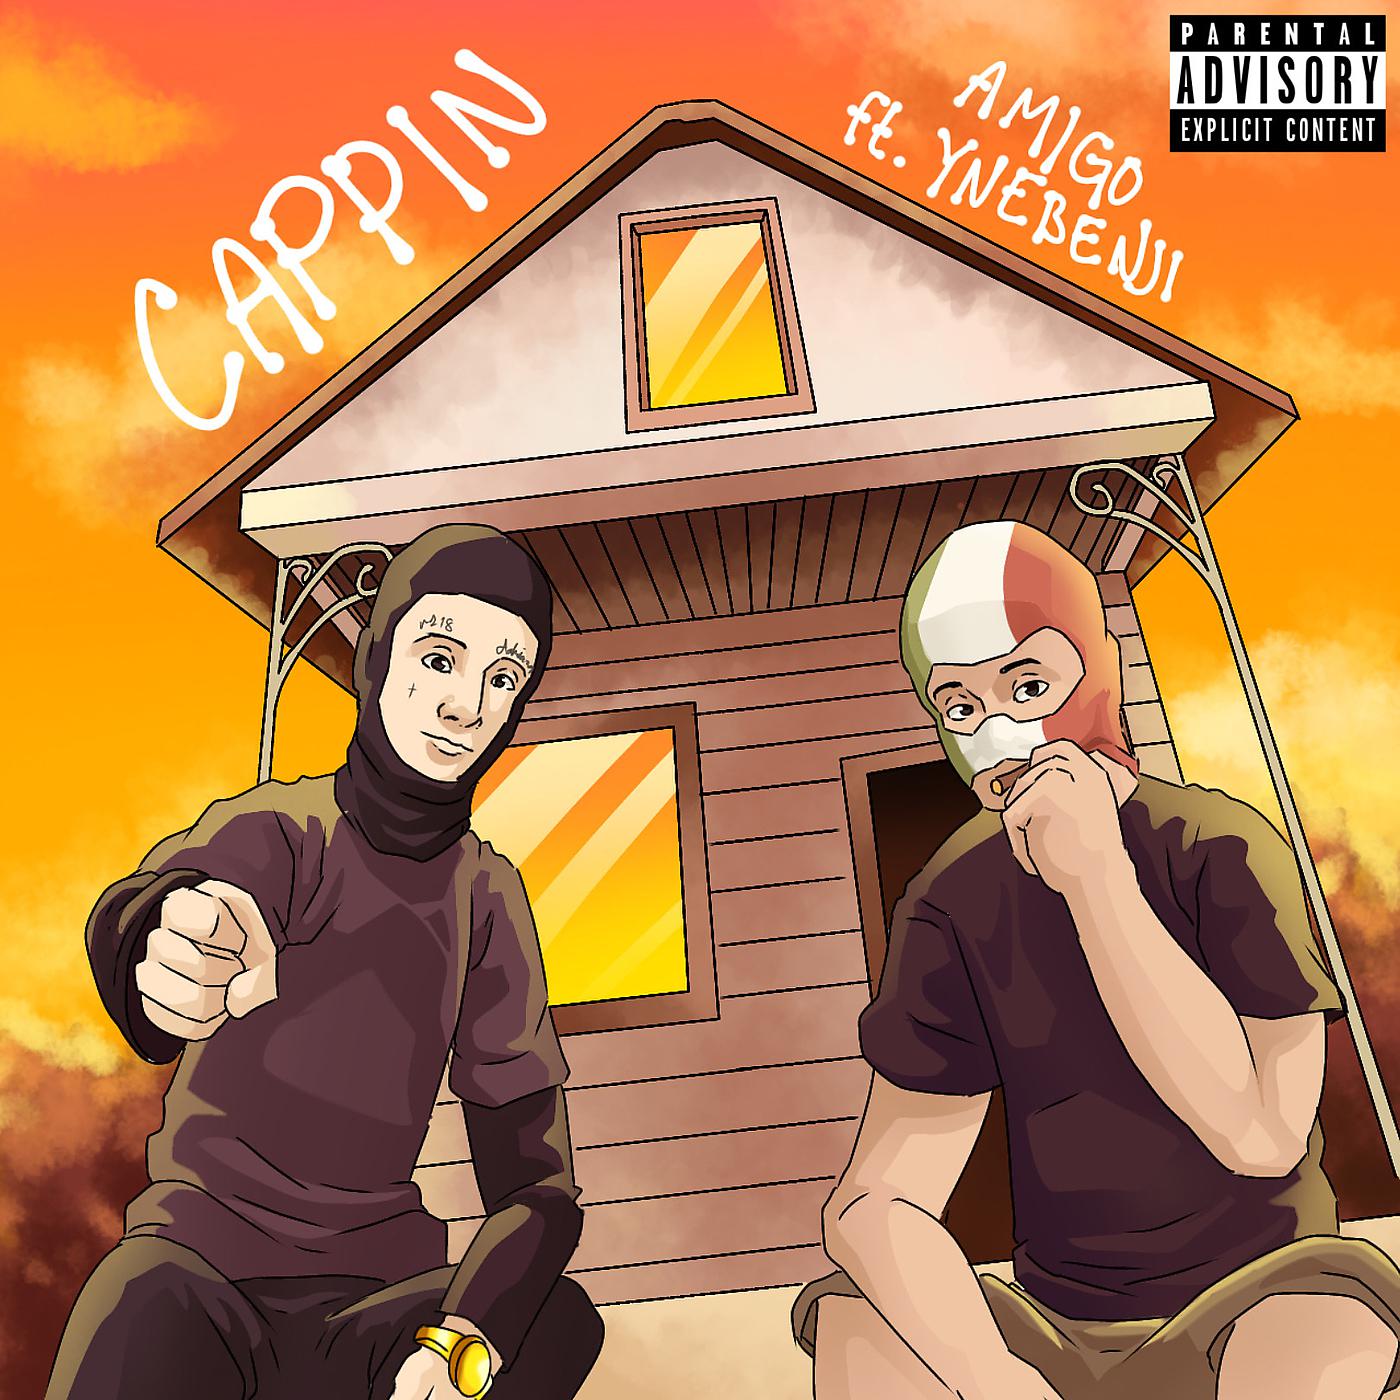 Постер альбома Cappin